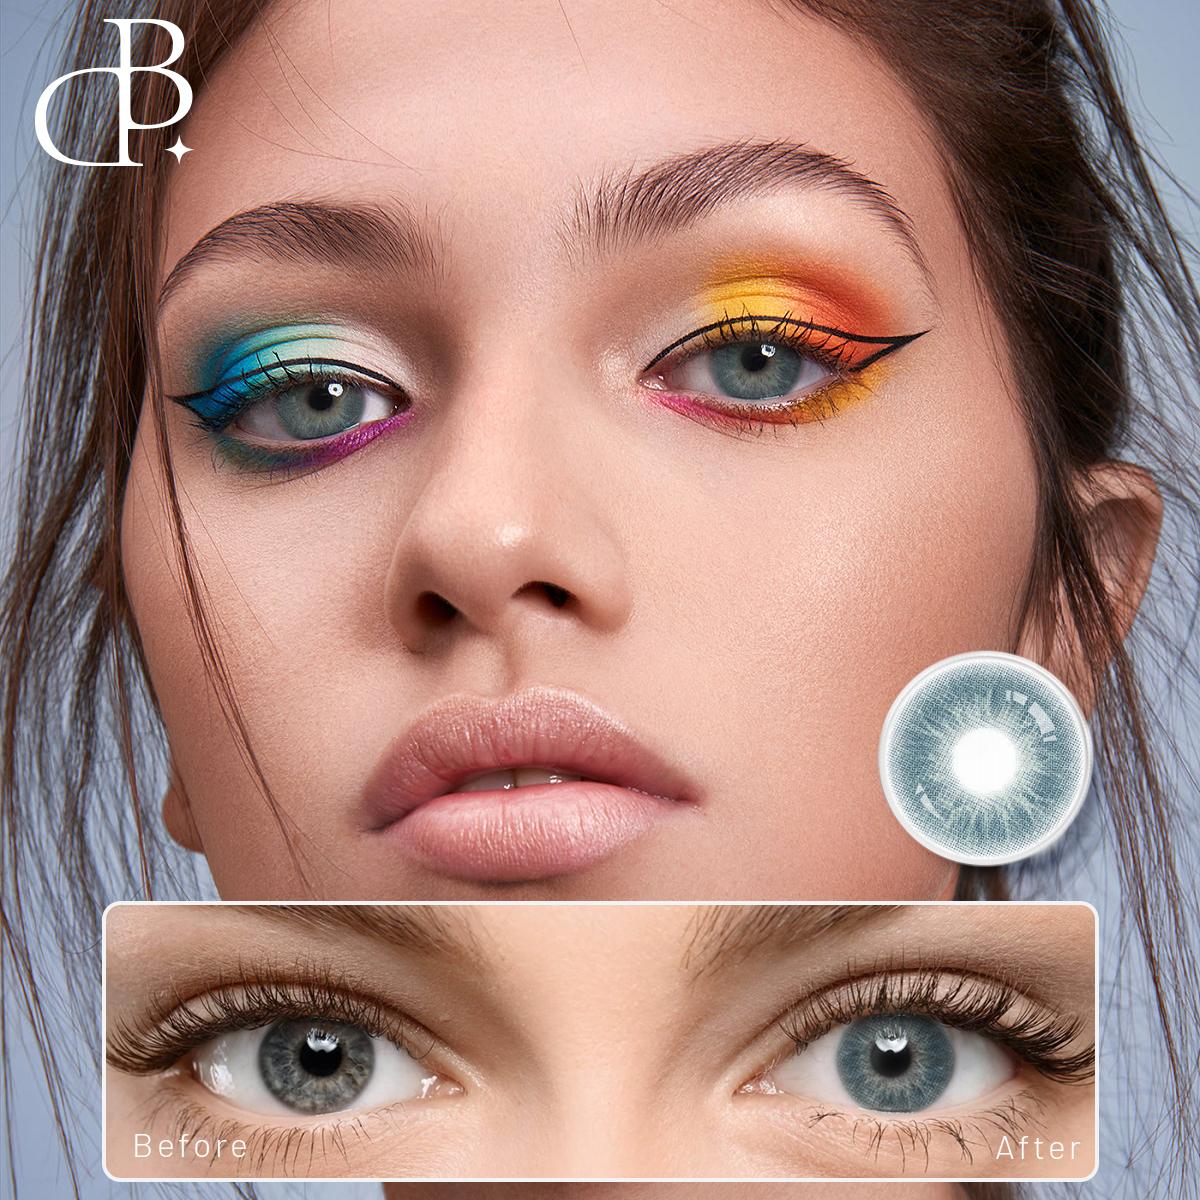 DBeyes Komfortable fargekontakter Øyekontaktlinser engros Årlig Naturlig farget kontaktlinse